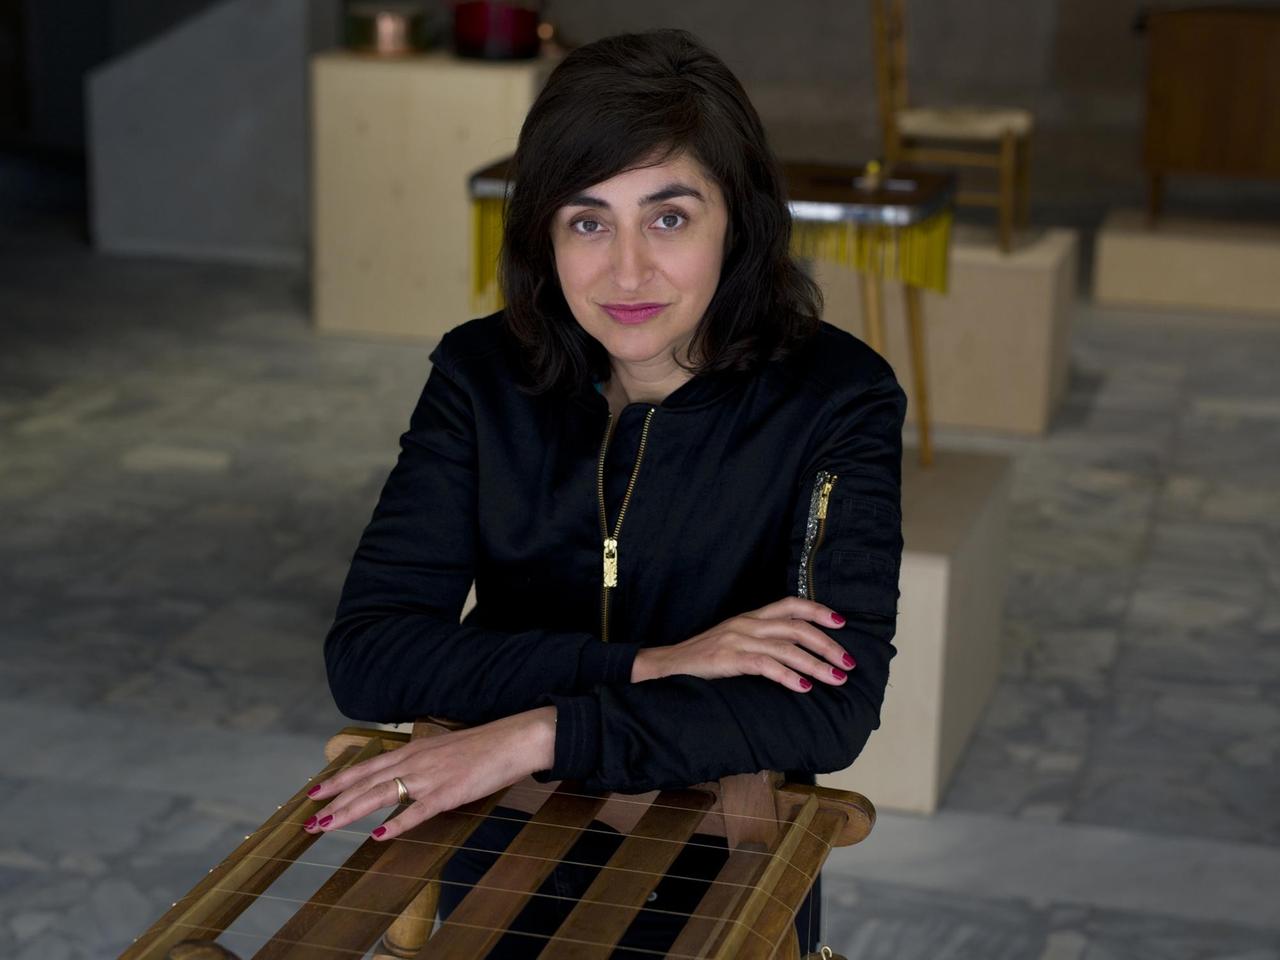 Nevin Aladağ stützt sich auf eines ihrer zum Musikinstrument umgebauten Möbelstücke.